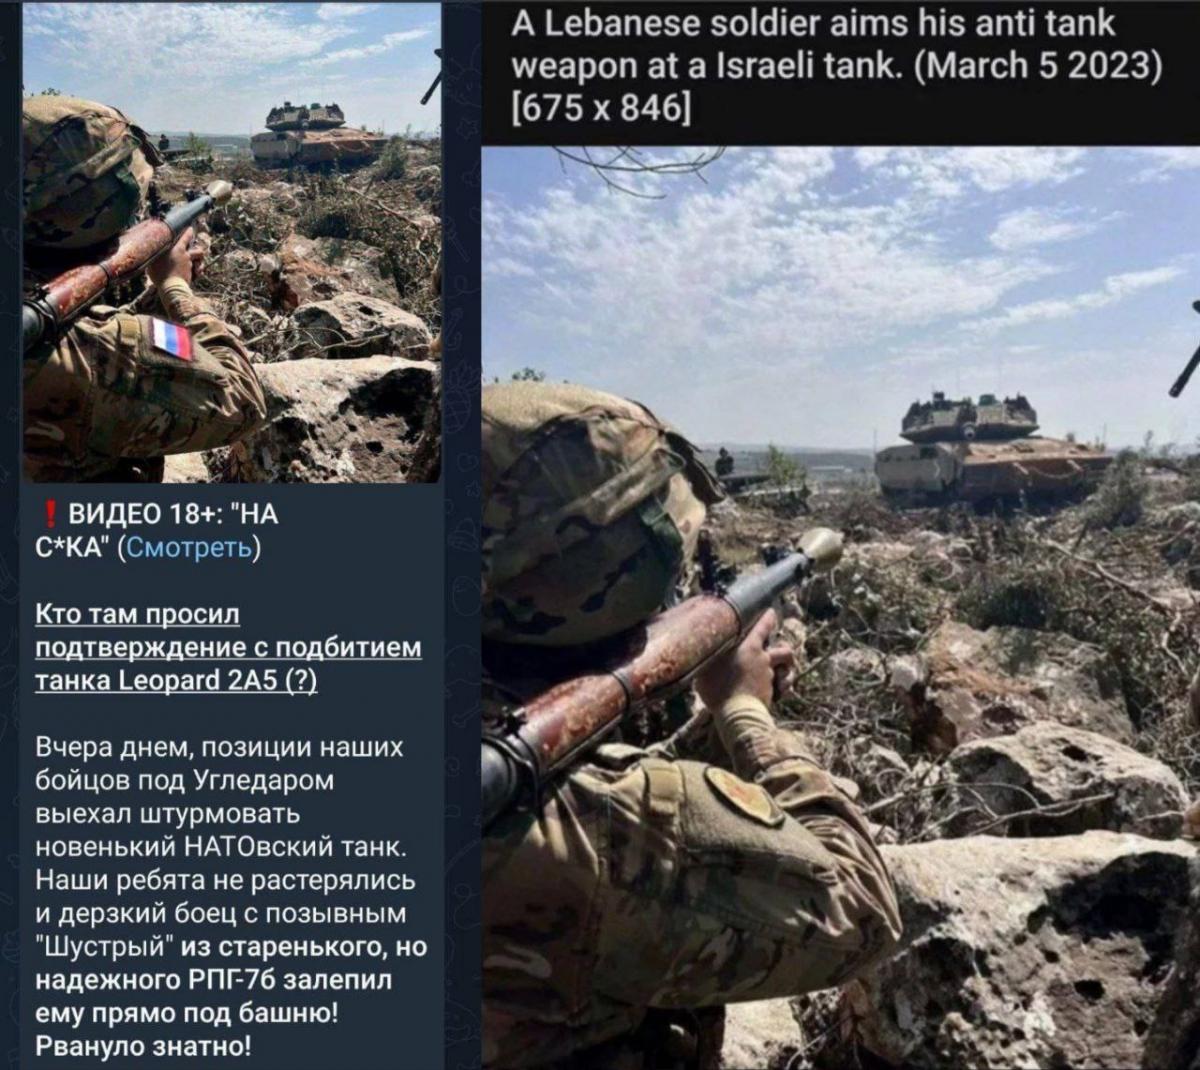 Erster Leopard-Panzer zerstört! Russen prahlen mit Foto-Beweis! Ist der erste NATO-Panzer vernichtet?